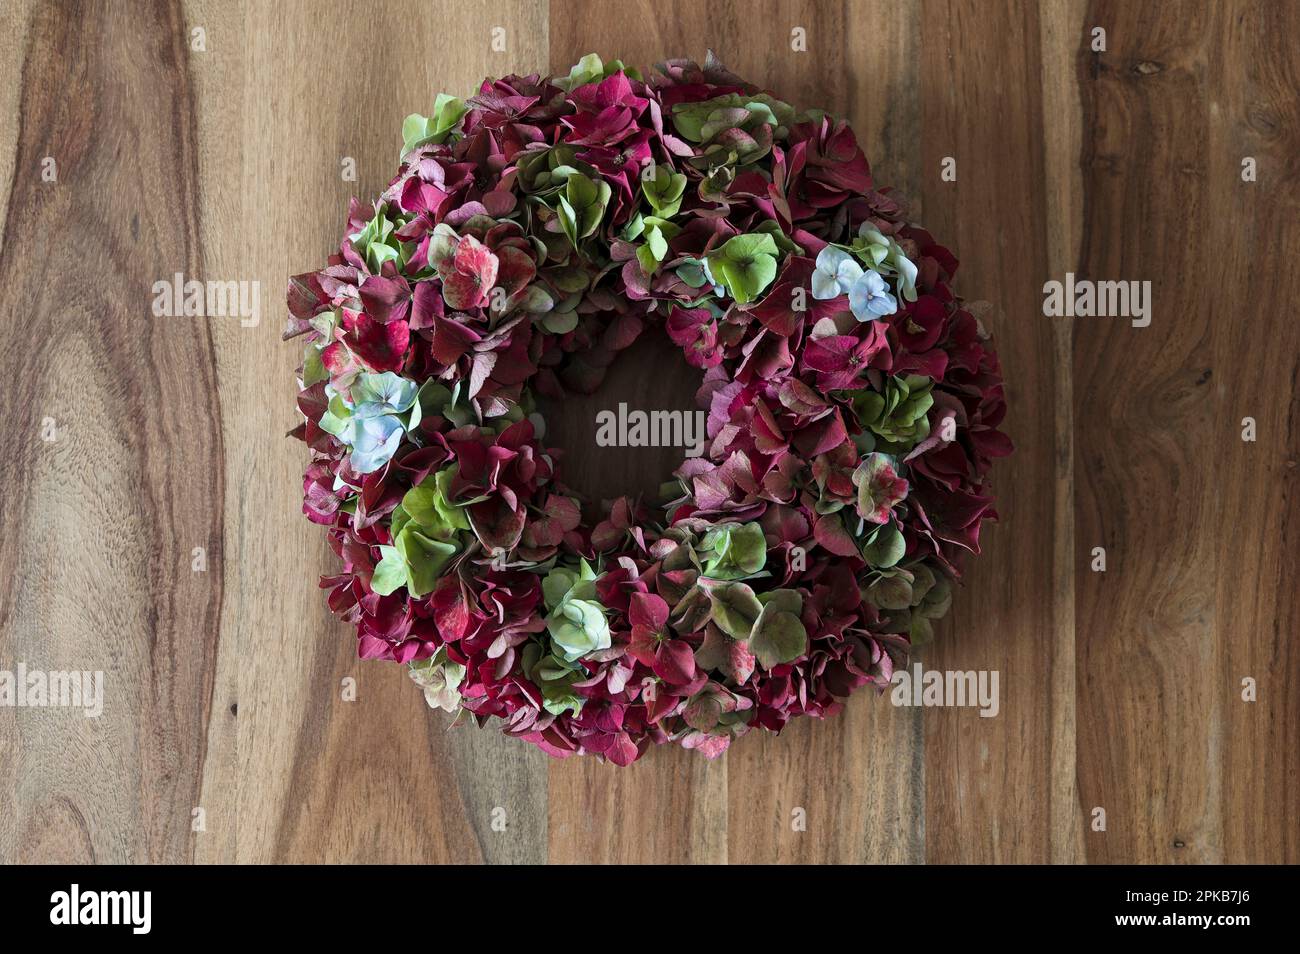 Corona floreale legata da fiori di idrangea rosso scuro, verde e azzurro, decorazione con materiali naturali Foto Stock